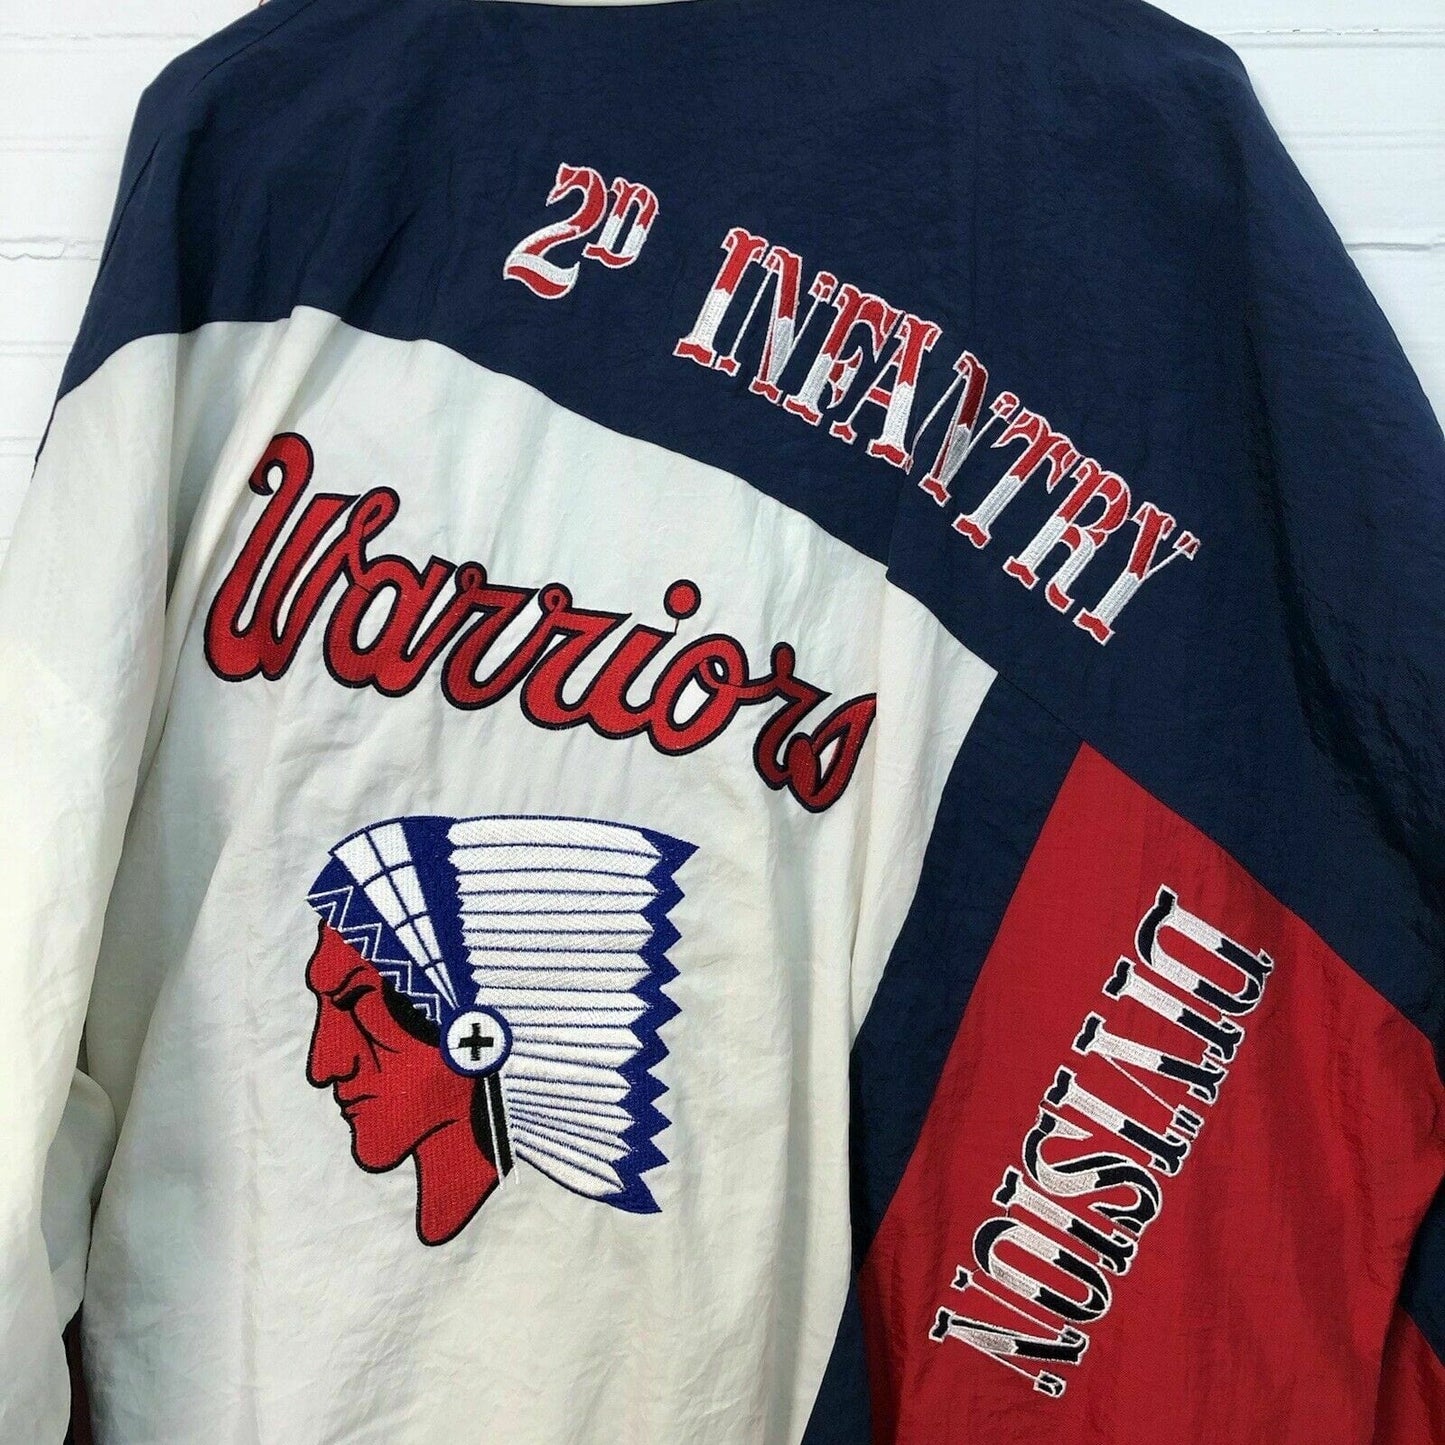 Vintage Mens Size M Windbreaker Jacket 2d Infantry Warriors Division